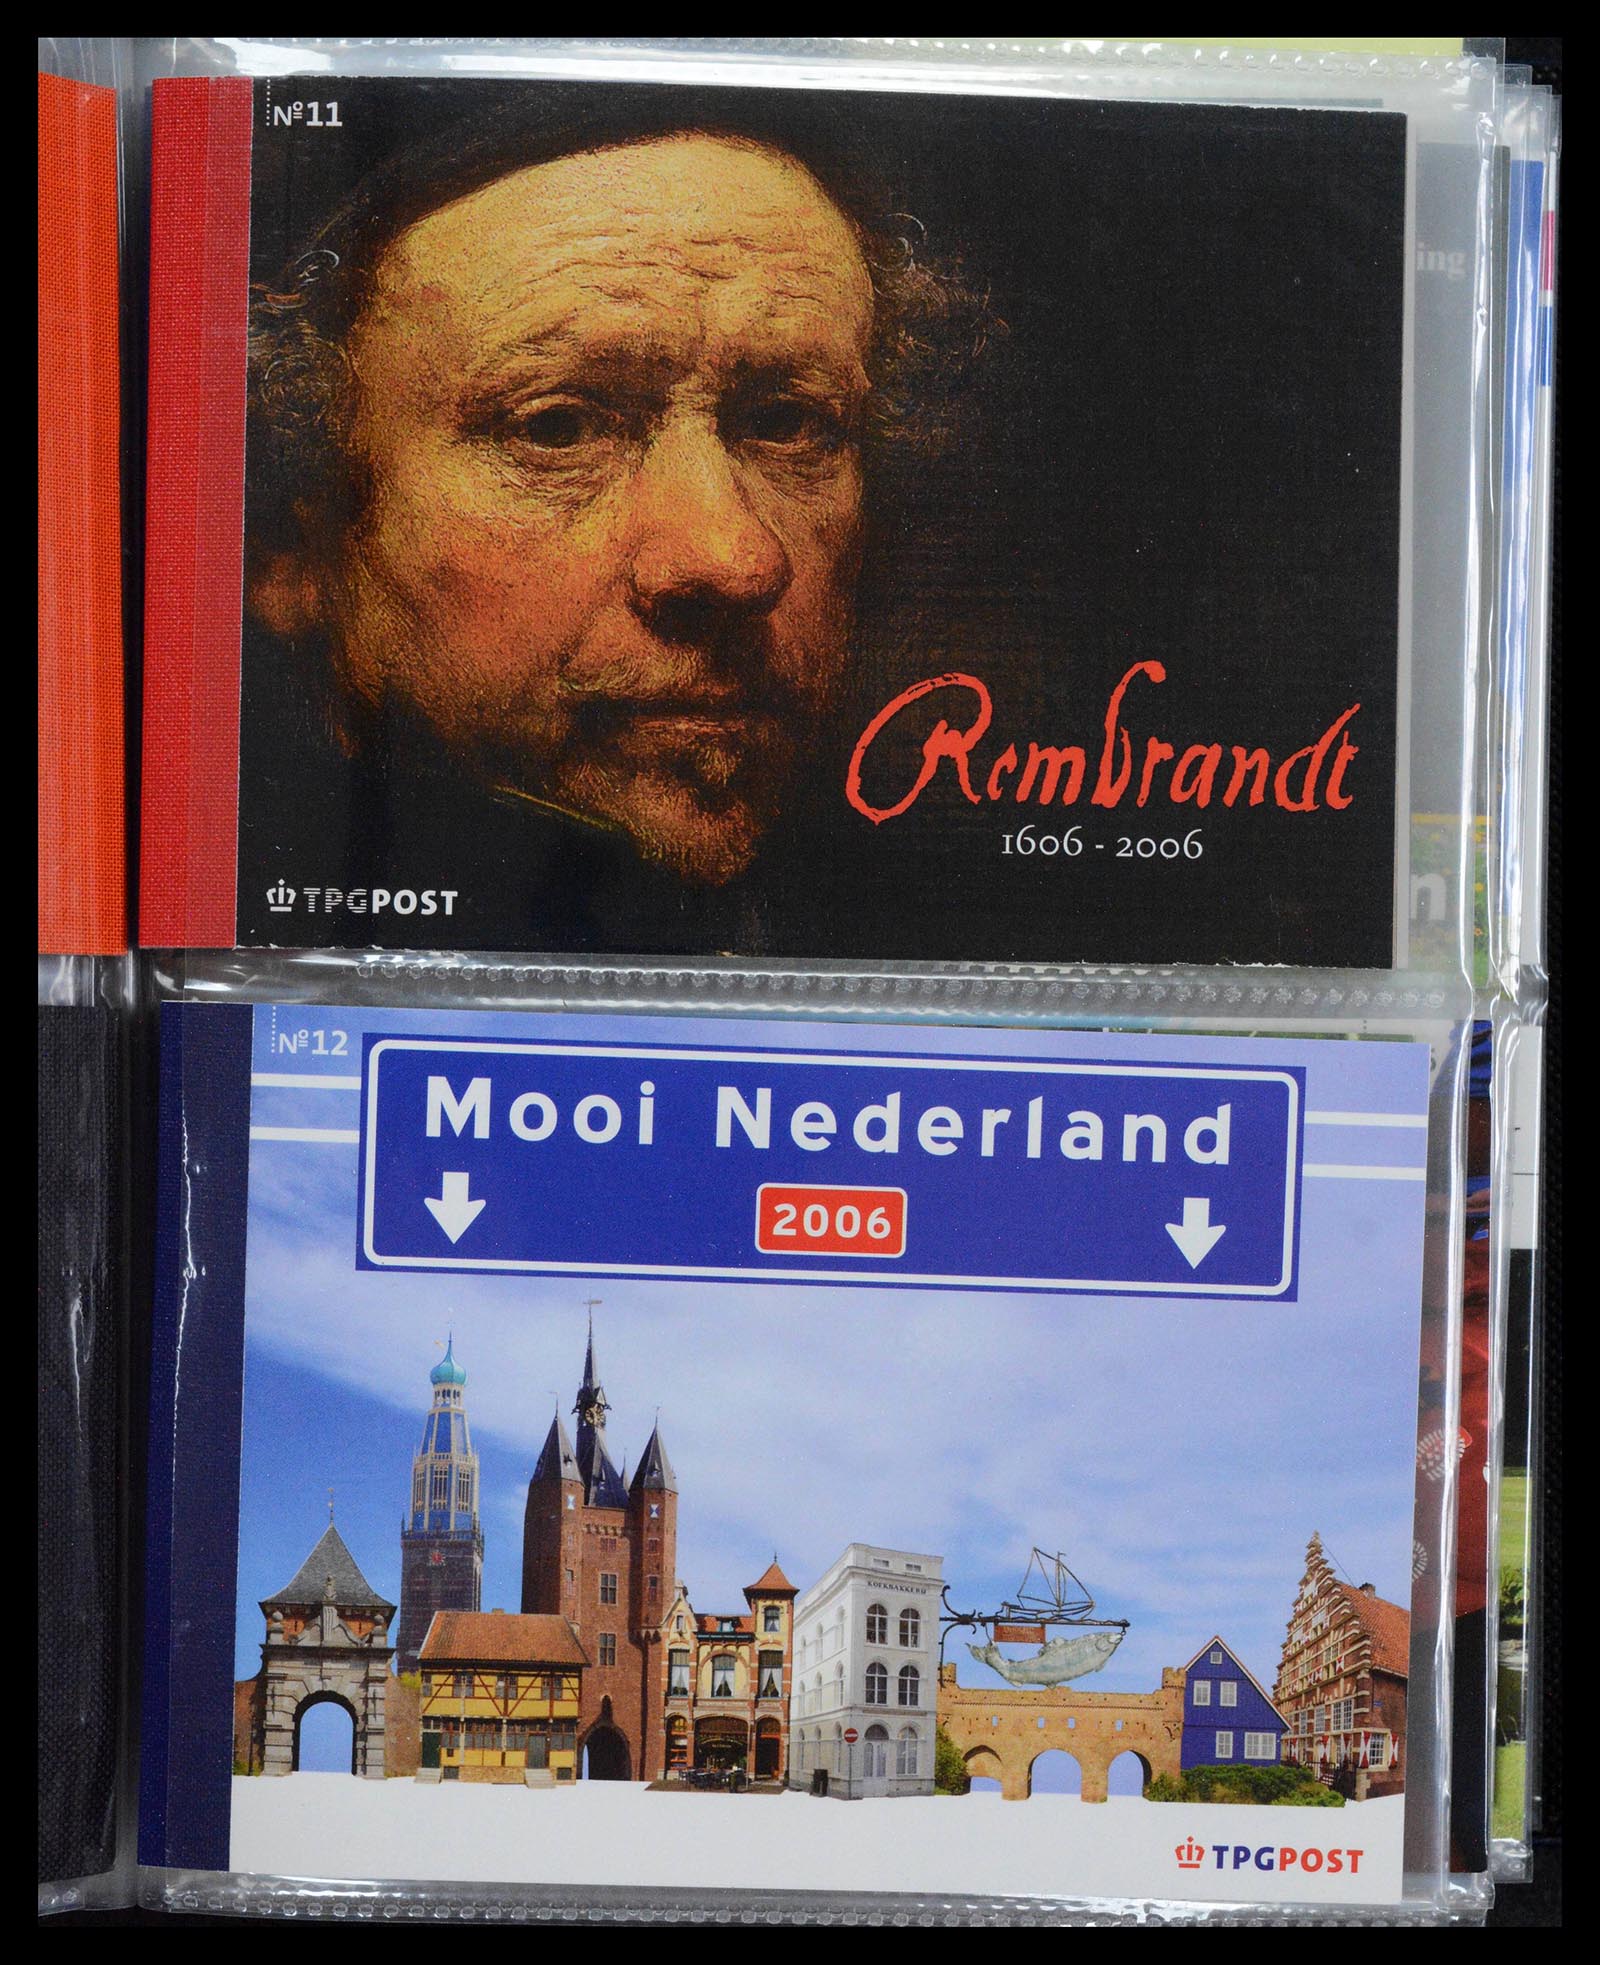 39018 0006 - Stamp collection 39018 Netherlands prestige booklets 2003-2016.